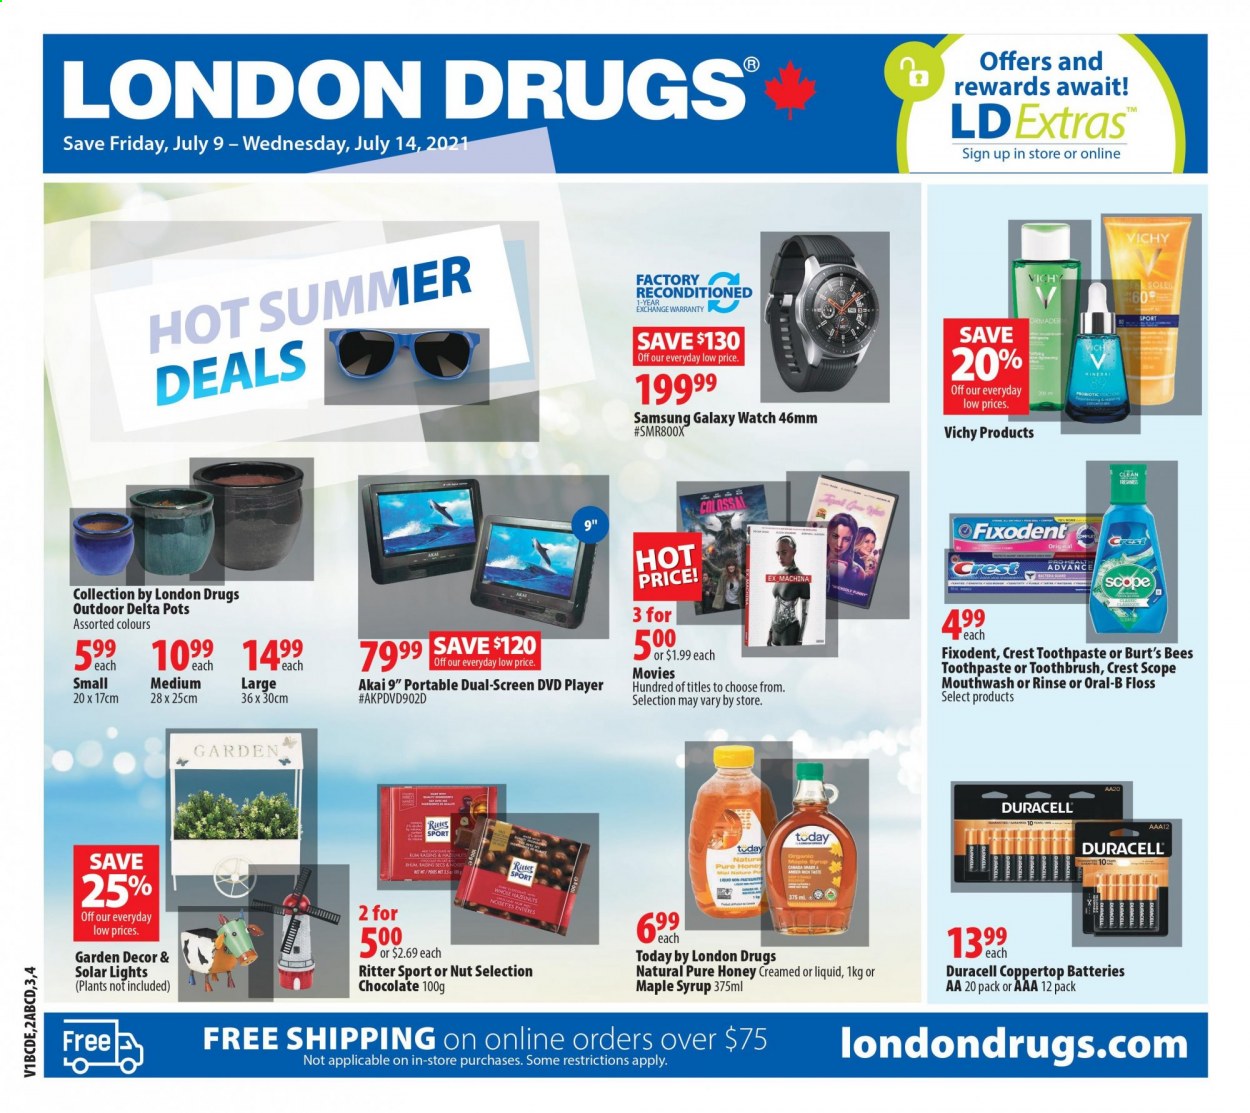 thumbnail - Circulaire London Drugs - 09 Juillet 2021 - 14 Juillet 2021 - Produits soldés - Samsung, miel, noisettes, alcool, Duracell, rhum, Ritter Sport, Vichy, Oral-b, raisins. Page 1.